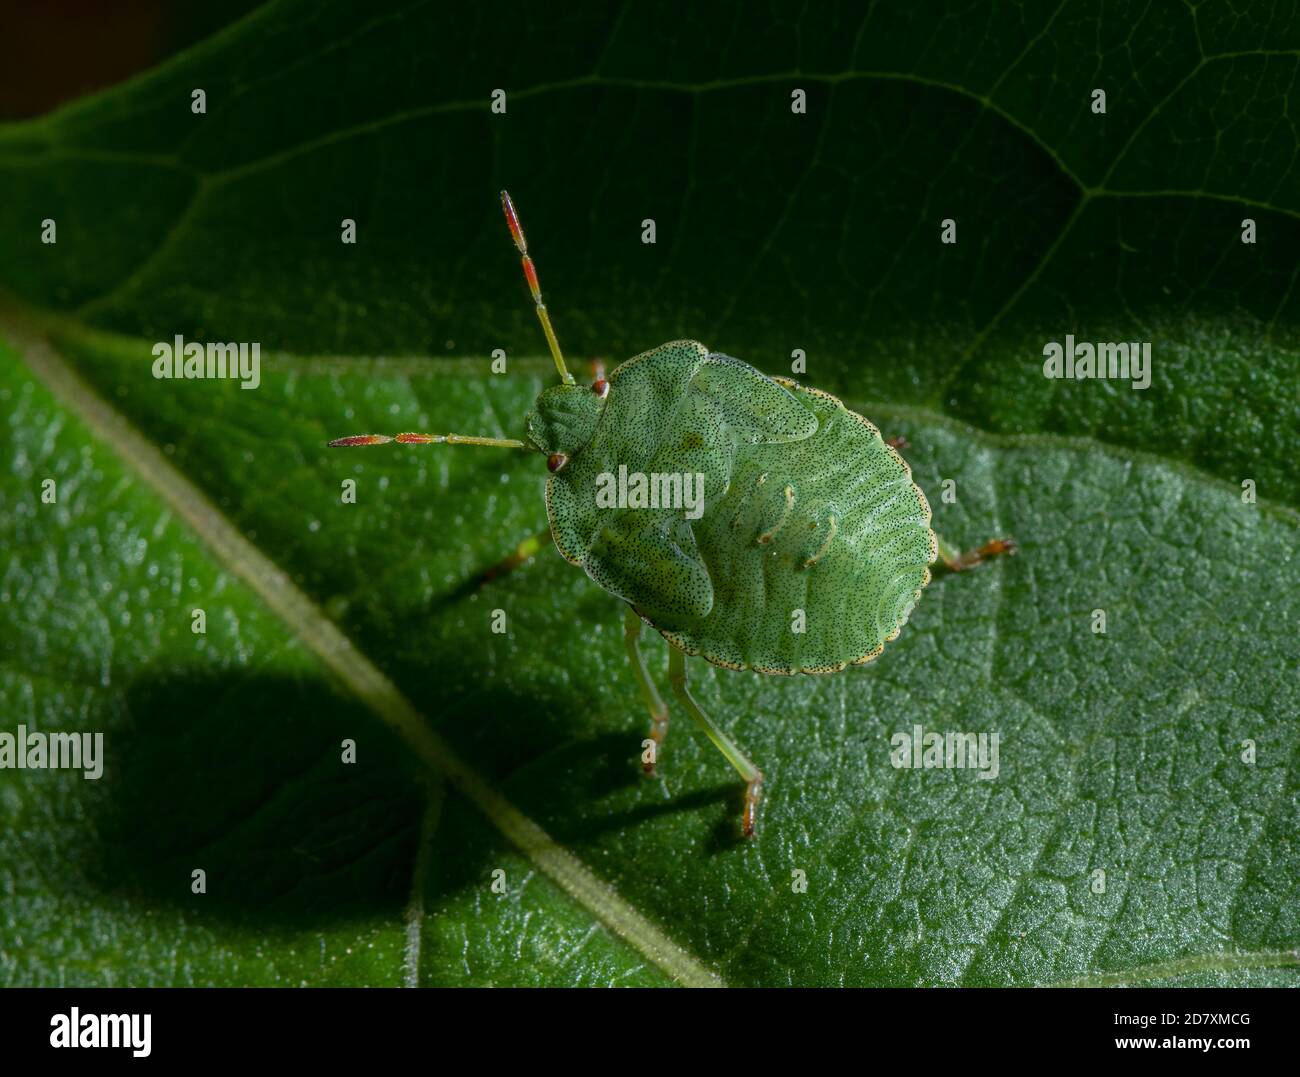 Nymph of Green shieldbug, Palomena prasina, on leaf. Stock Photo